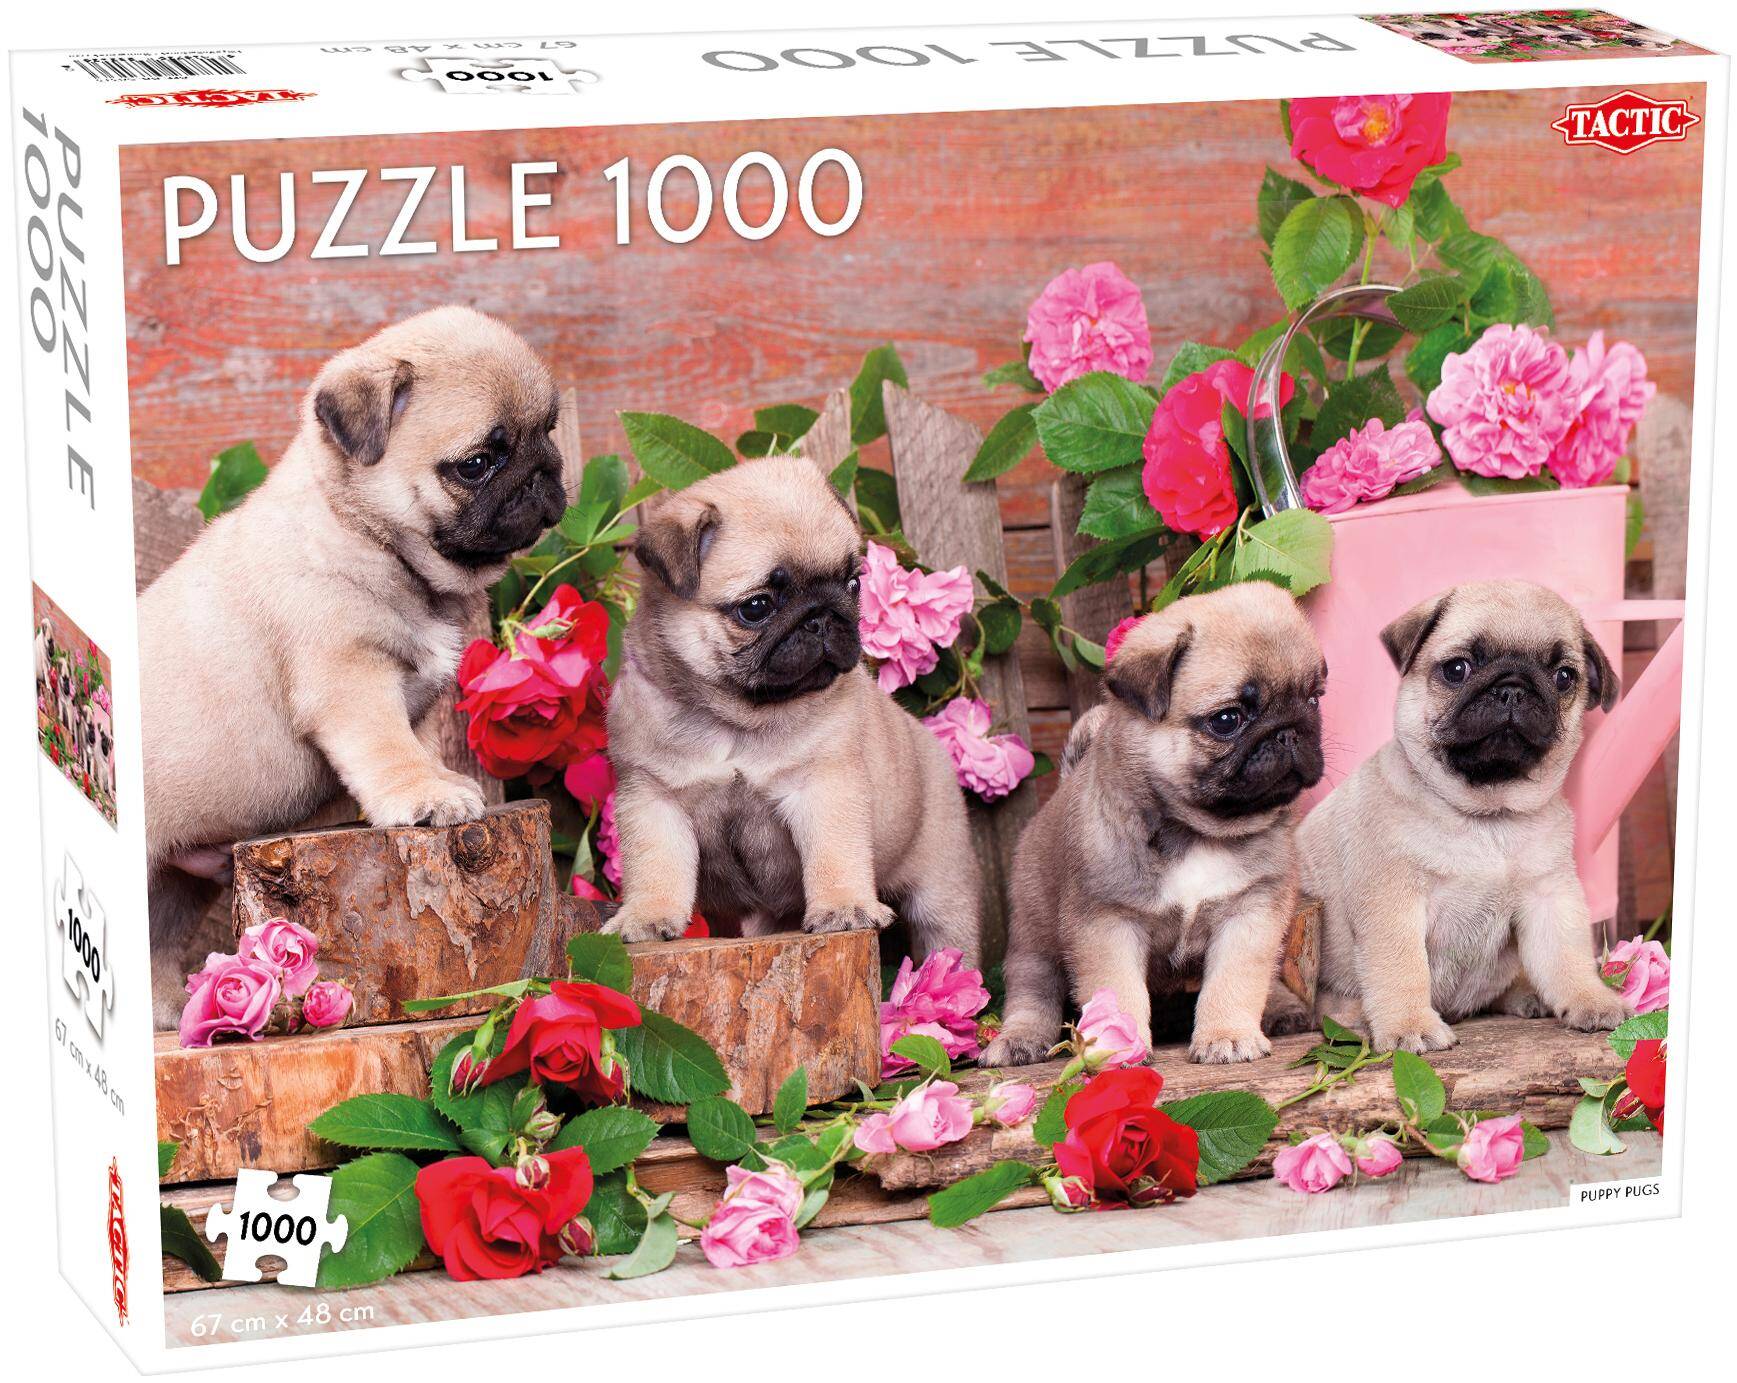 Puzzle 1000 Animals Puppy Pugs